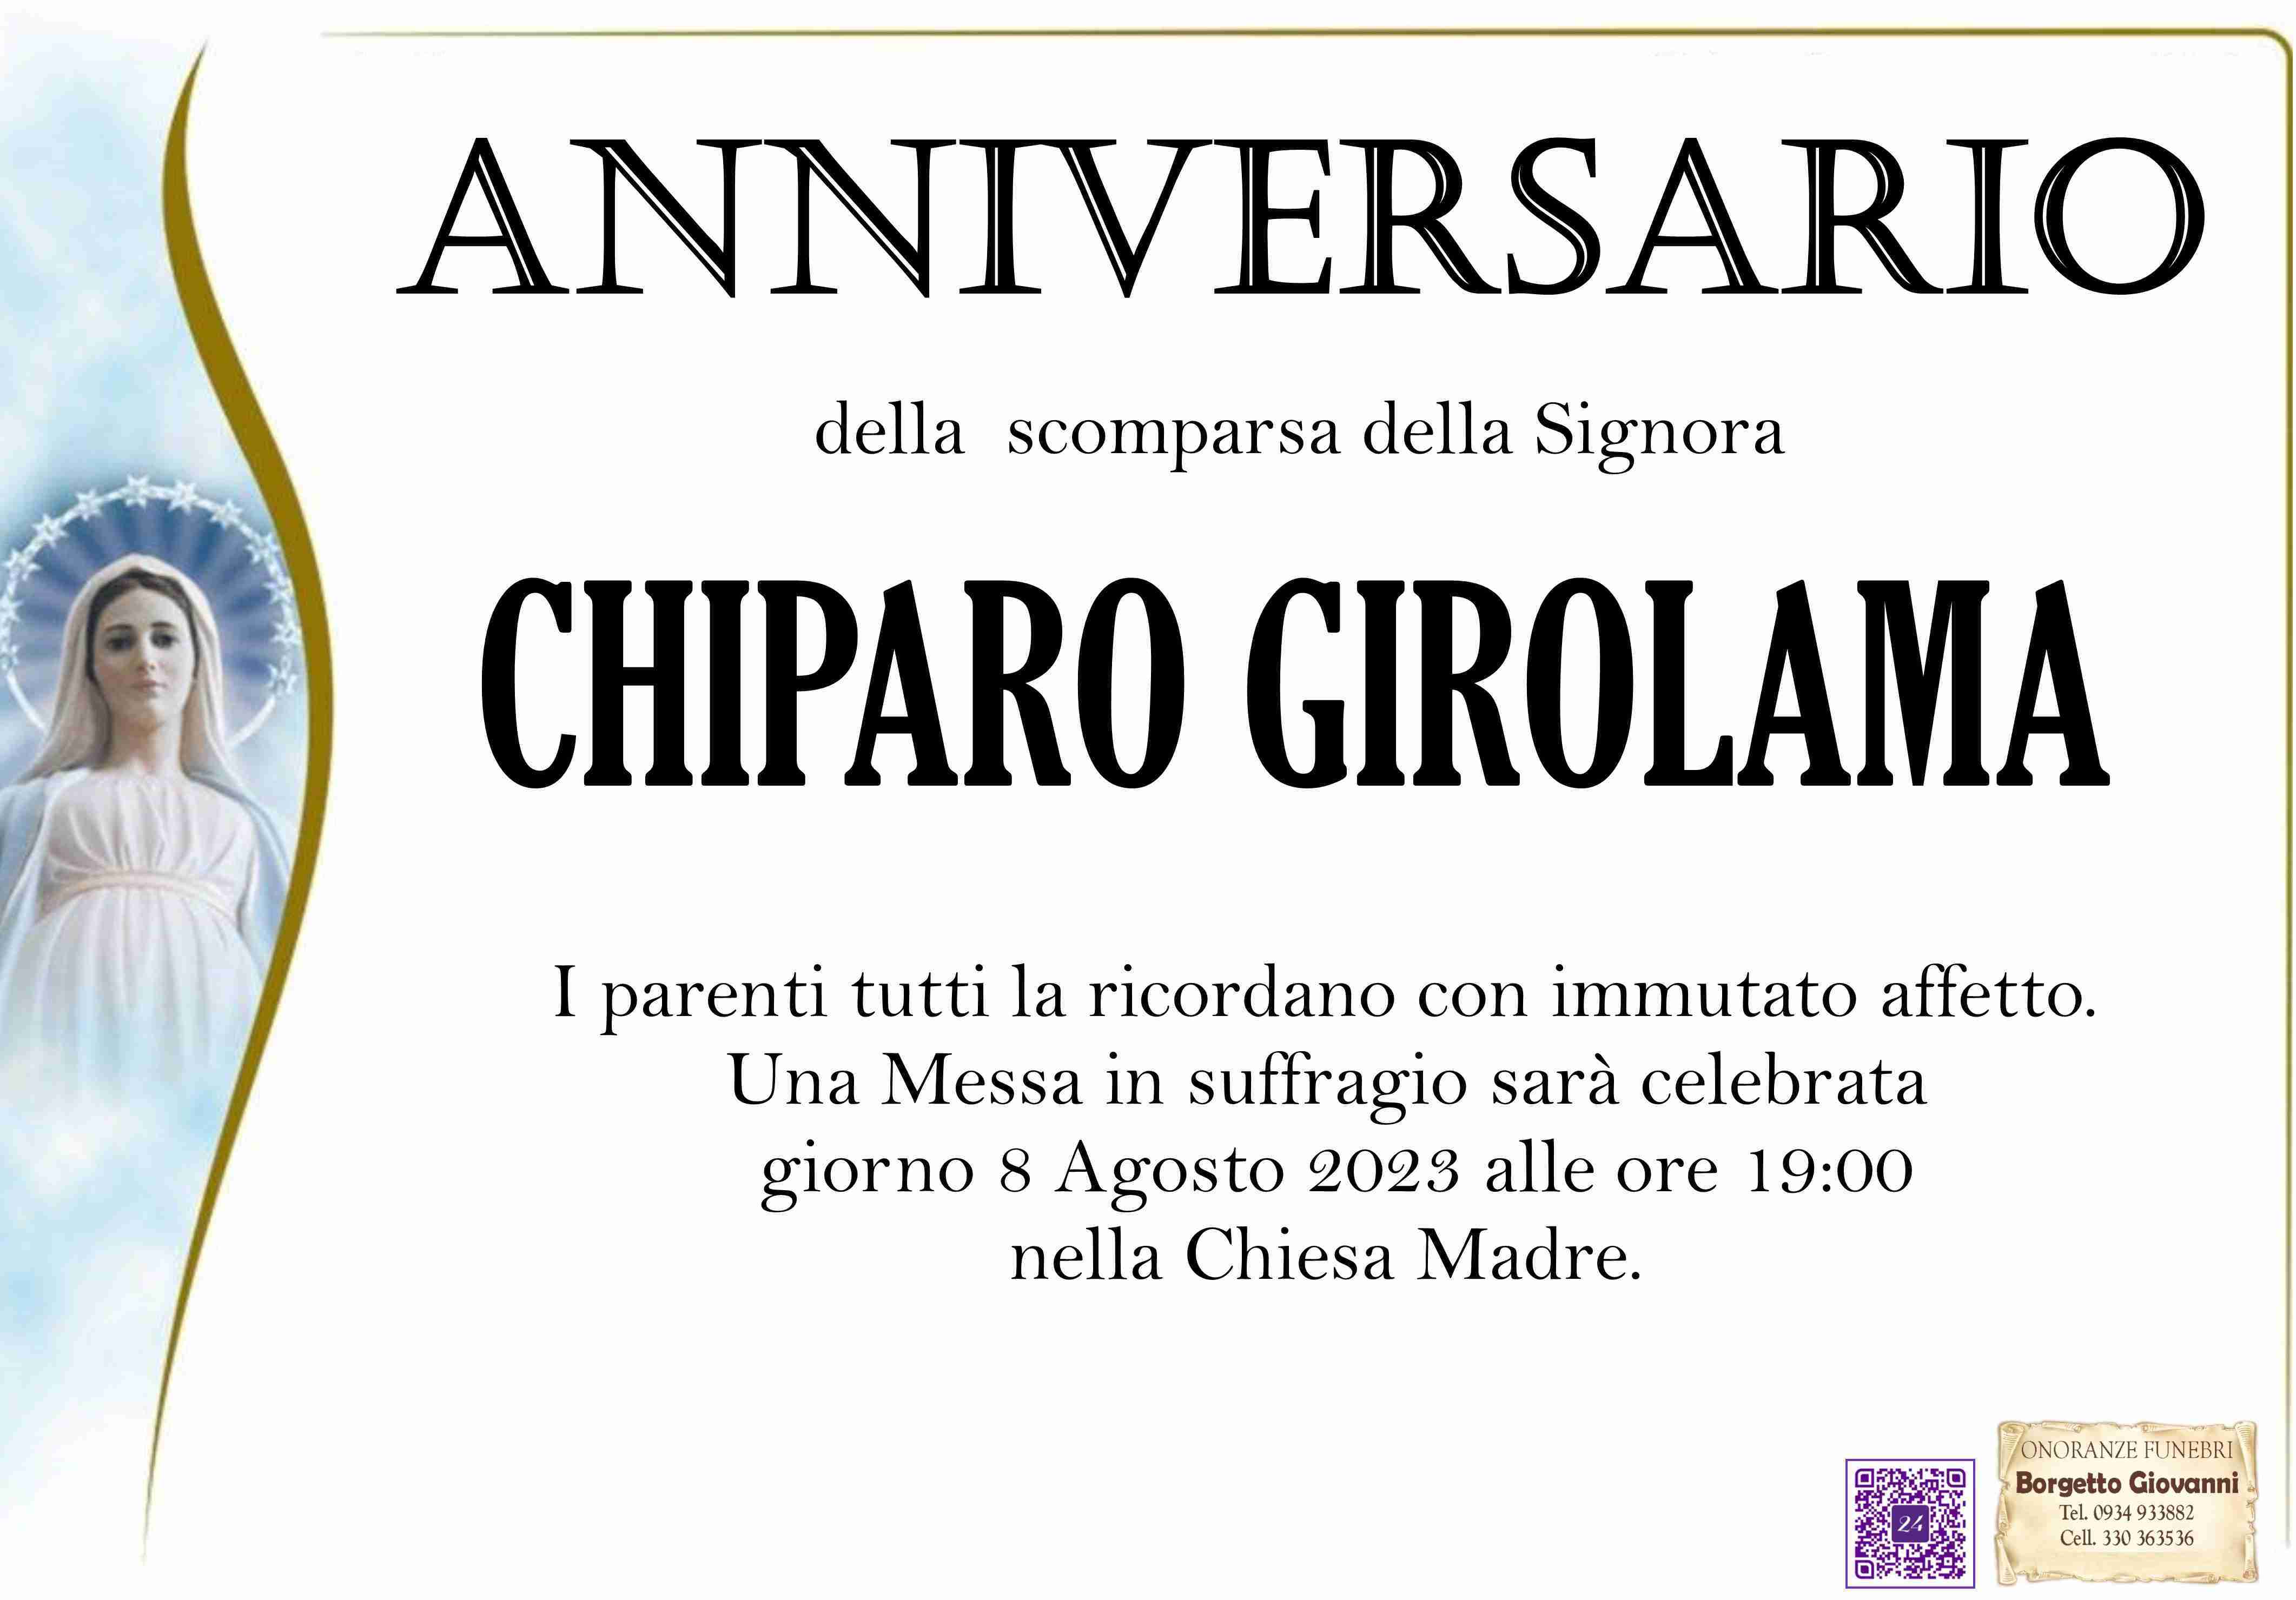 Girolama Chiparo